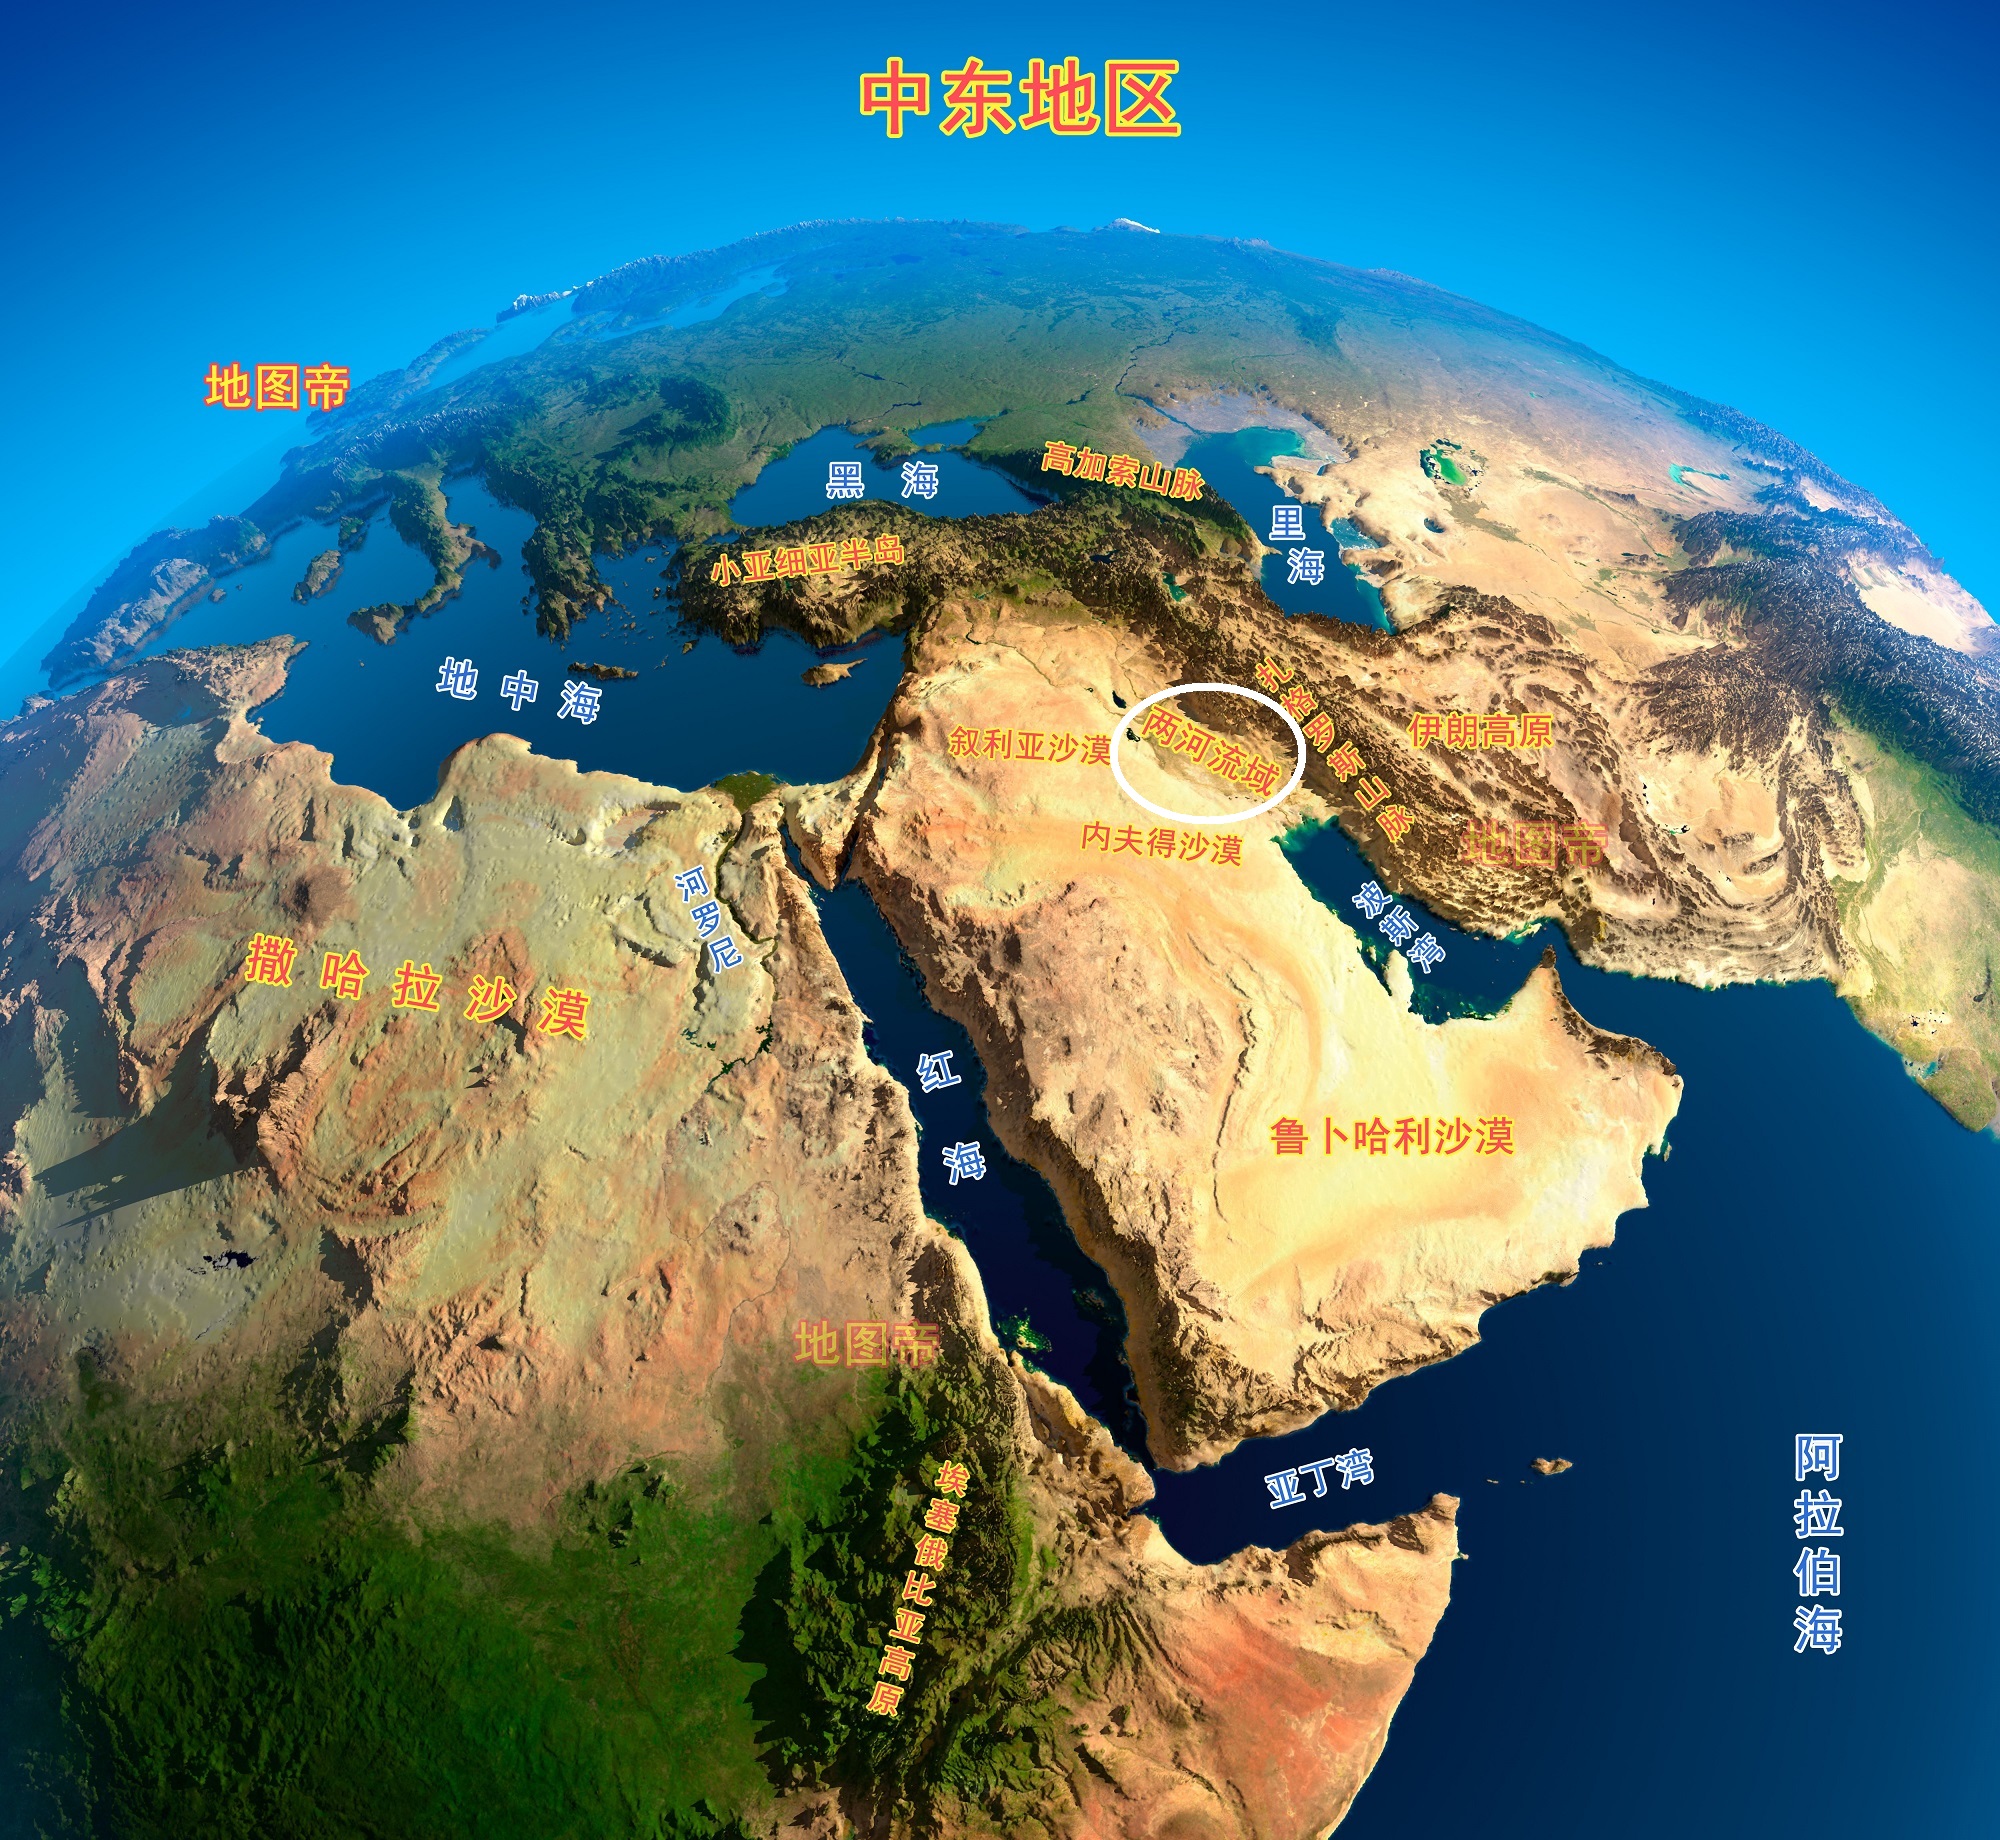 以色列地图中文版 - 以色列地图 - 地理教师网